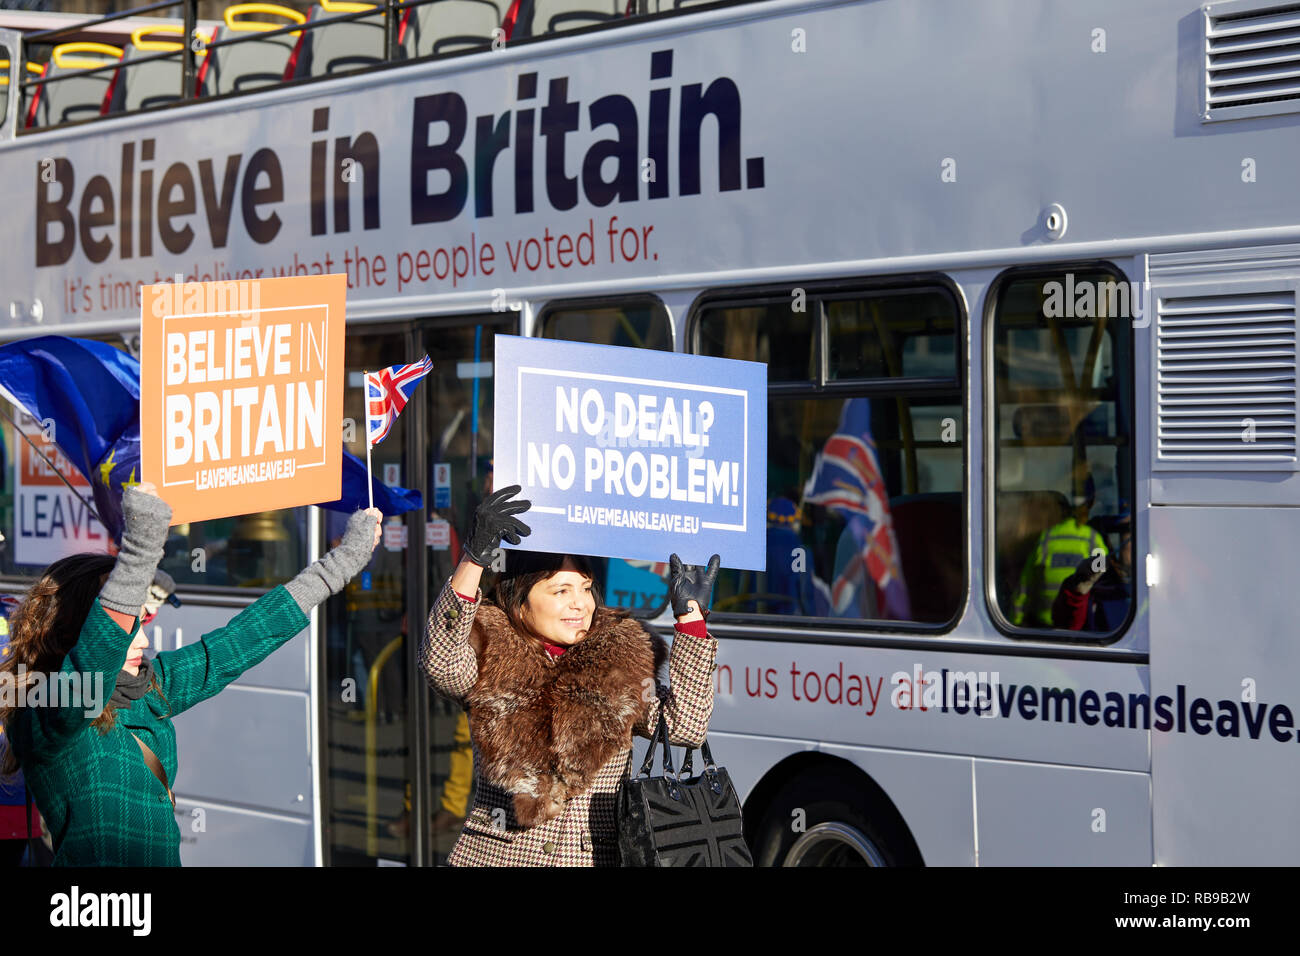 Londra, Regno Unito. Gen 8, 2019. Lasciare gli attivisti protesta al di fuori del Parlamento di giorni prima di un voto determinante sul Bexit trattare alla House of Commons. Credito: Kevin J. Frost/Alamy Live News Foto Stock